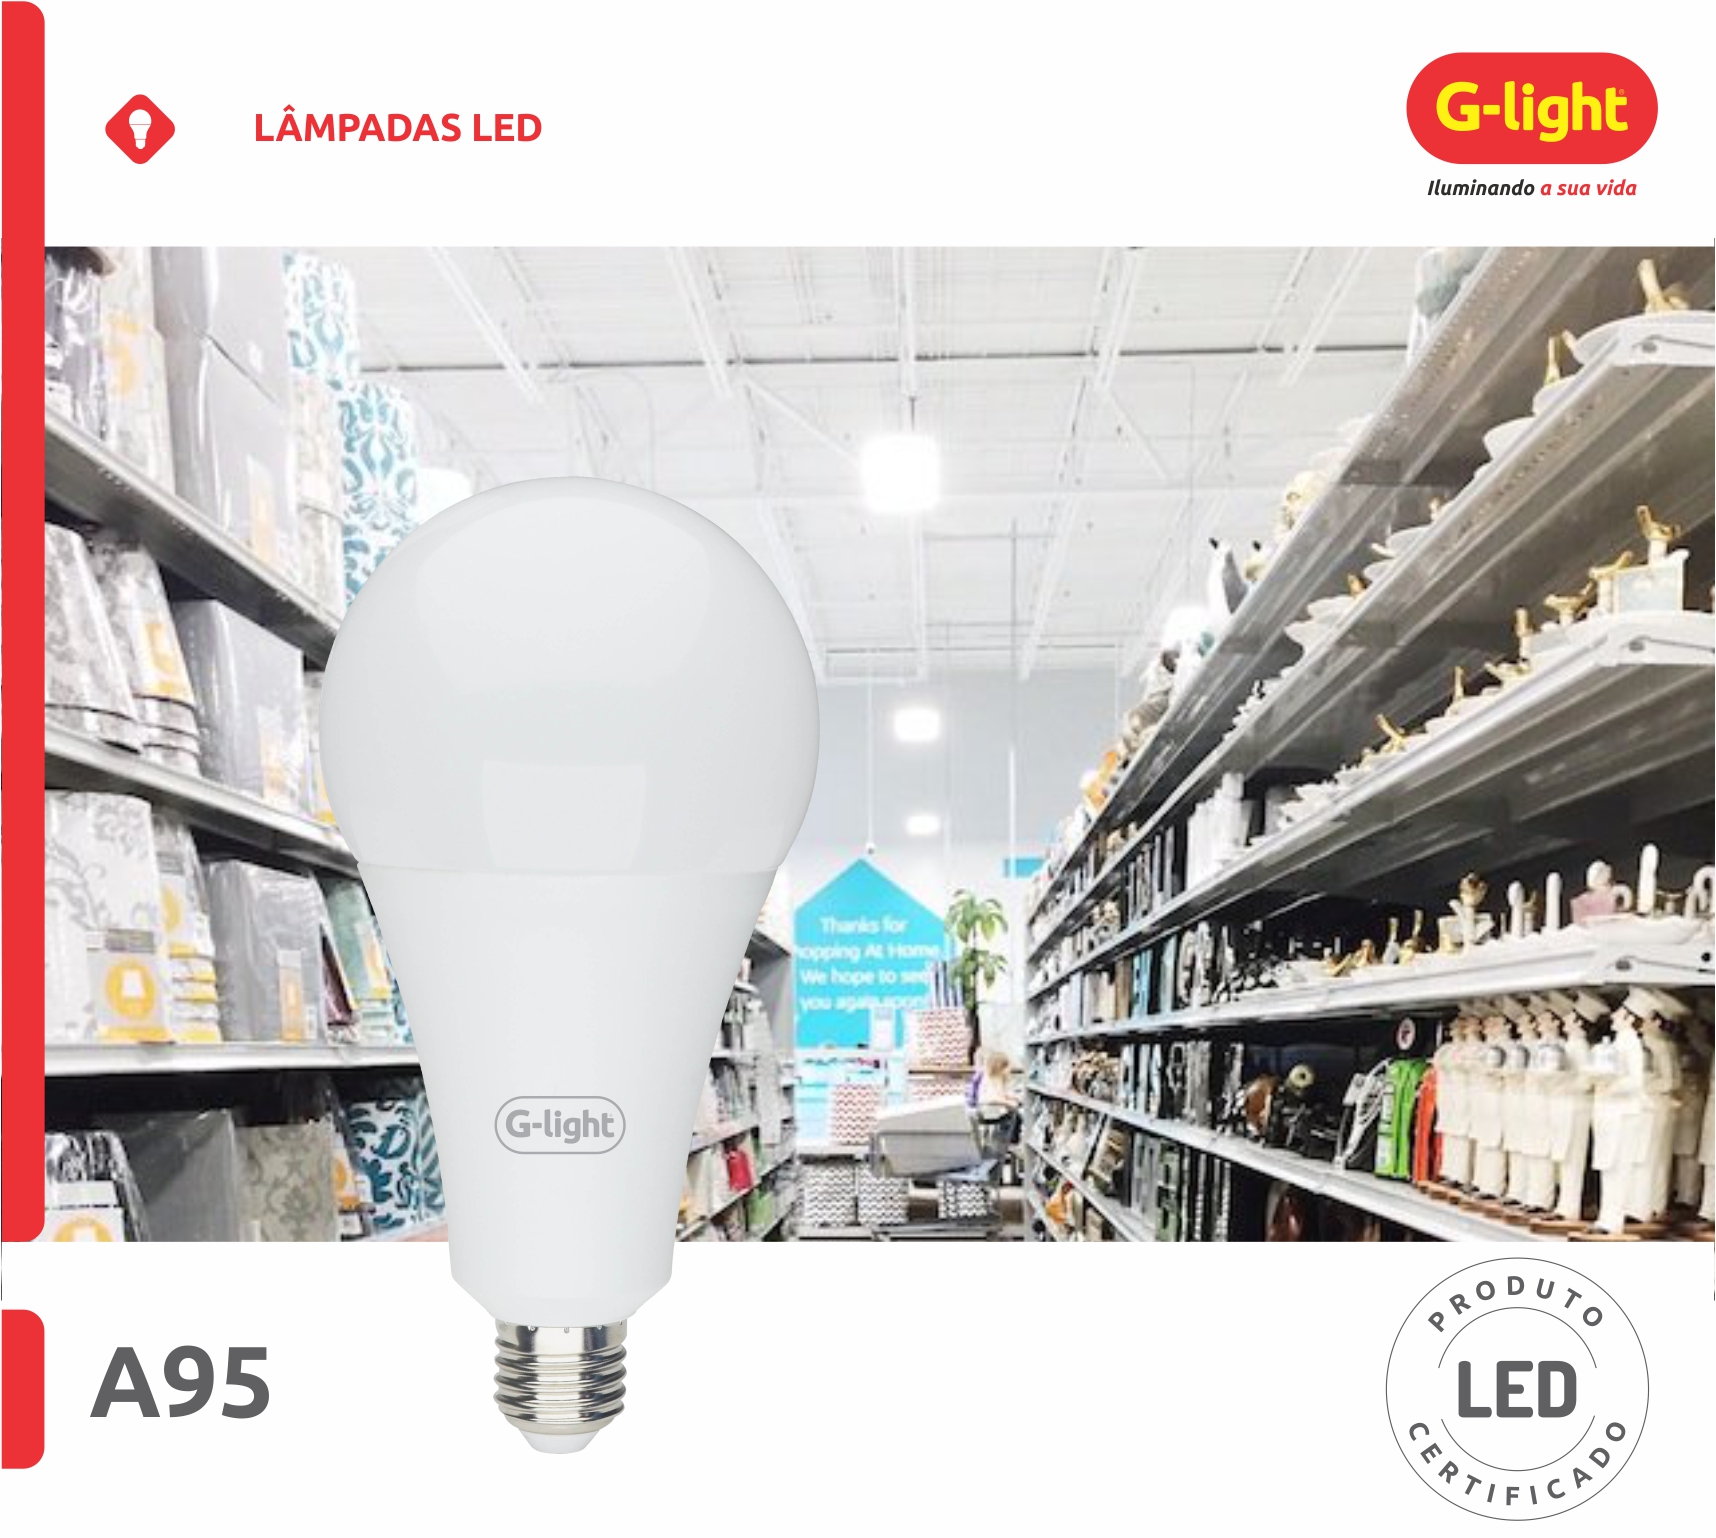 G-light - Lâmpadas, Luminárias e Acessórios de Alto Rendimento e